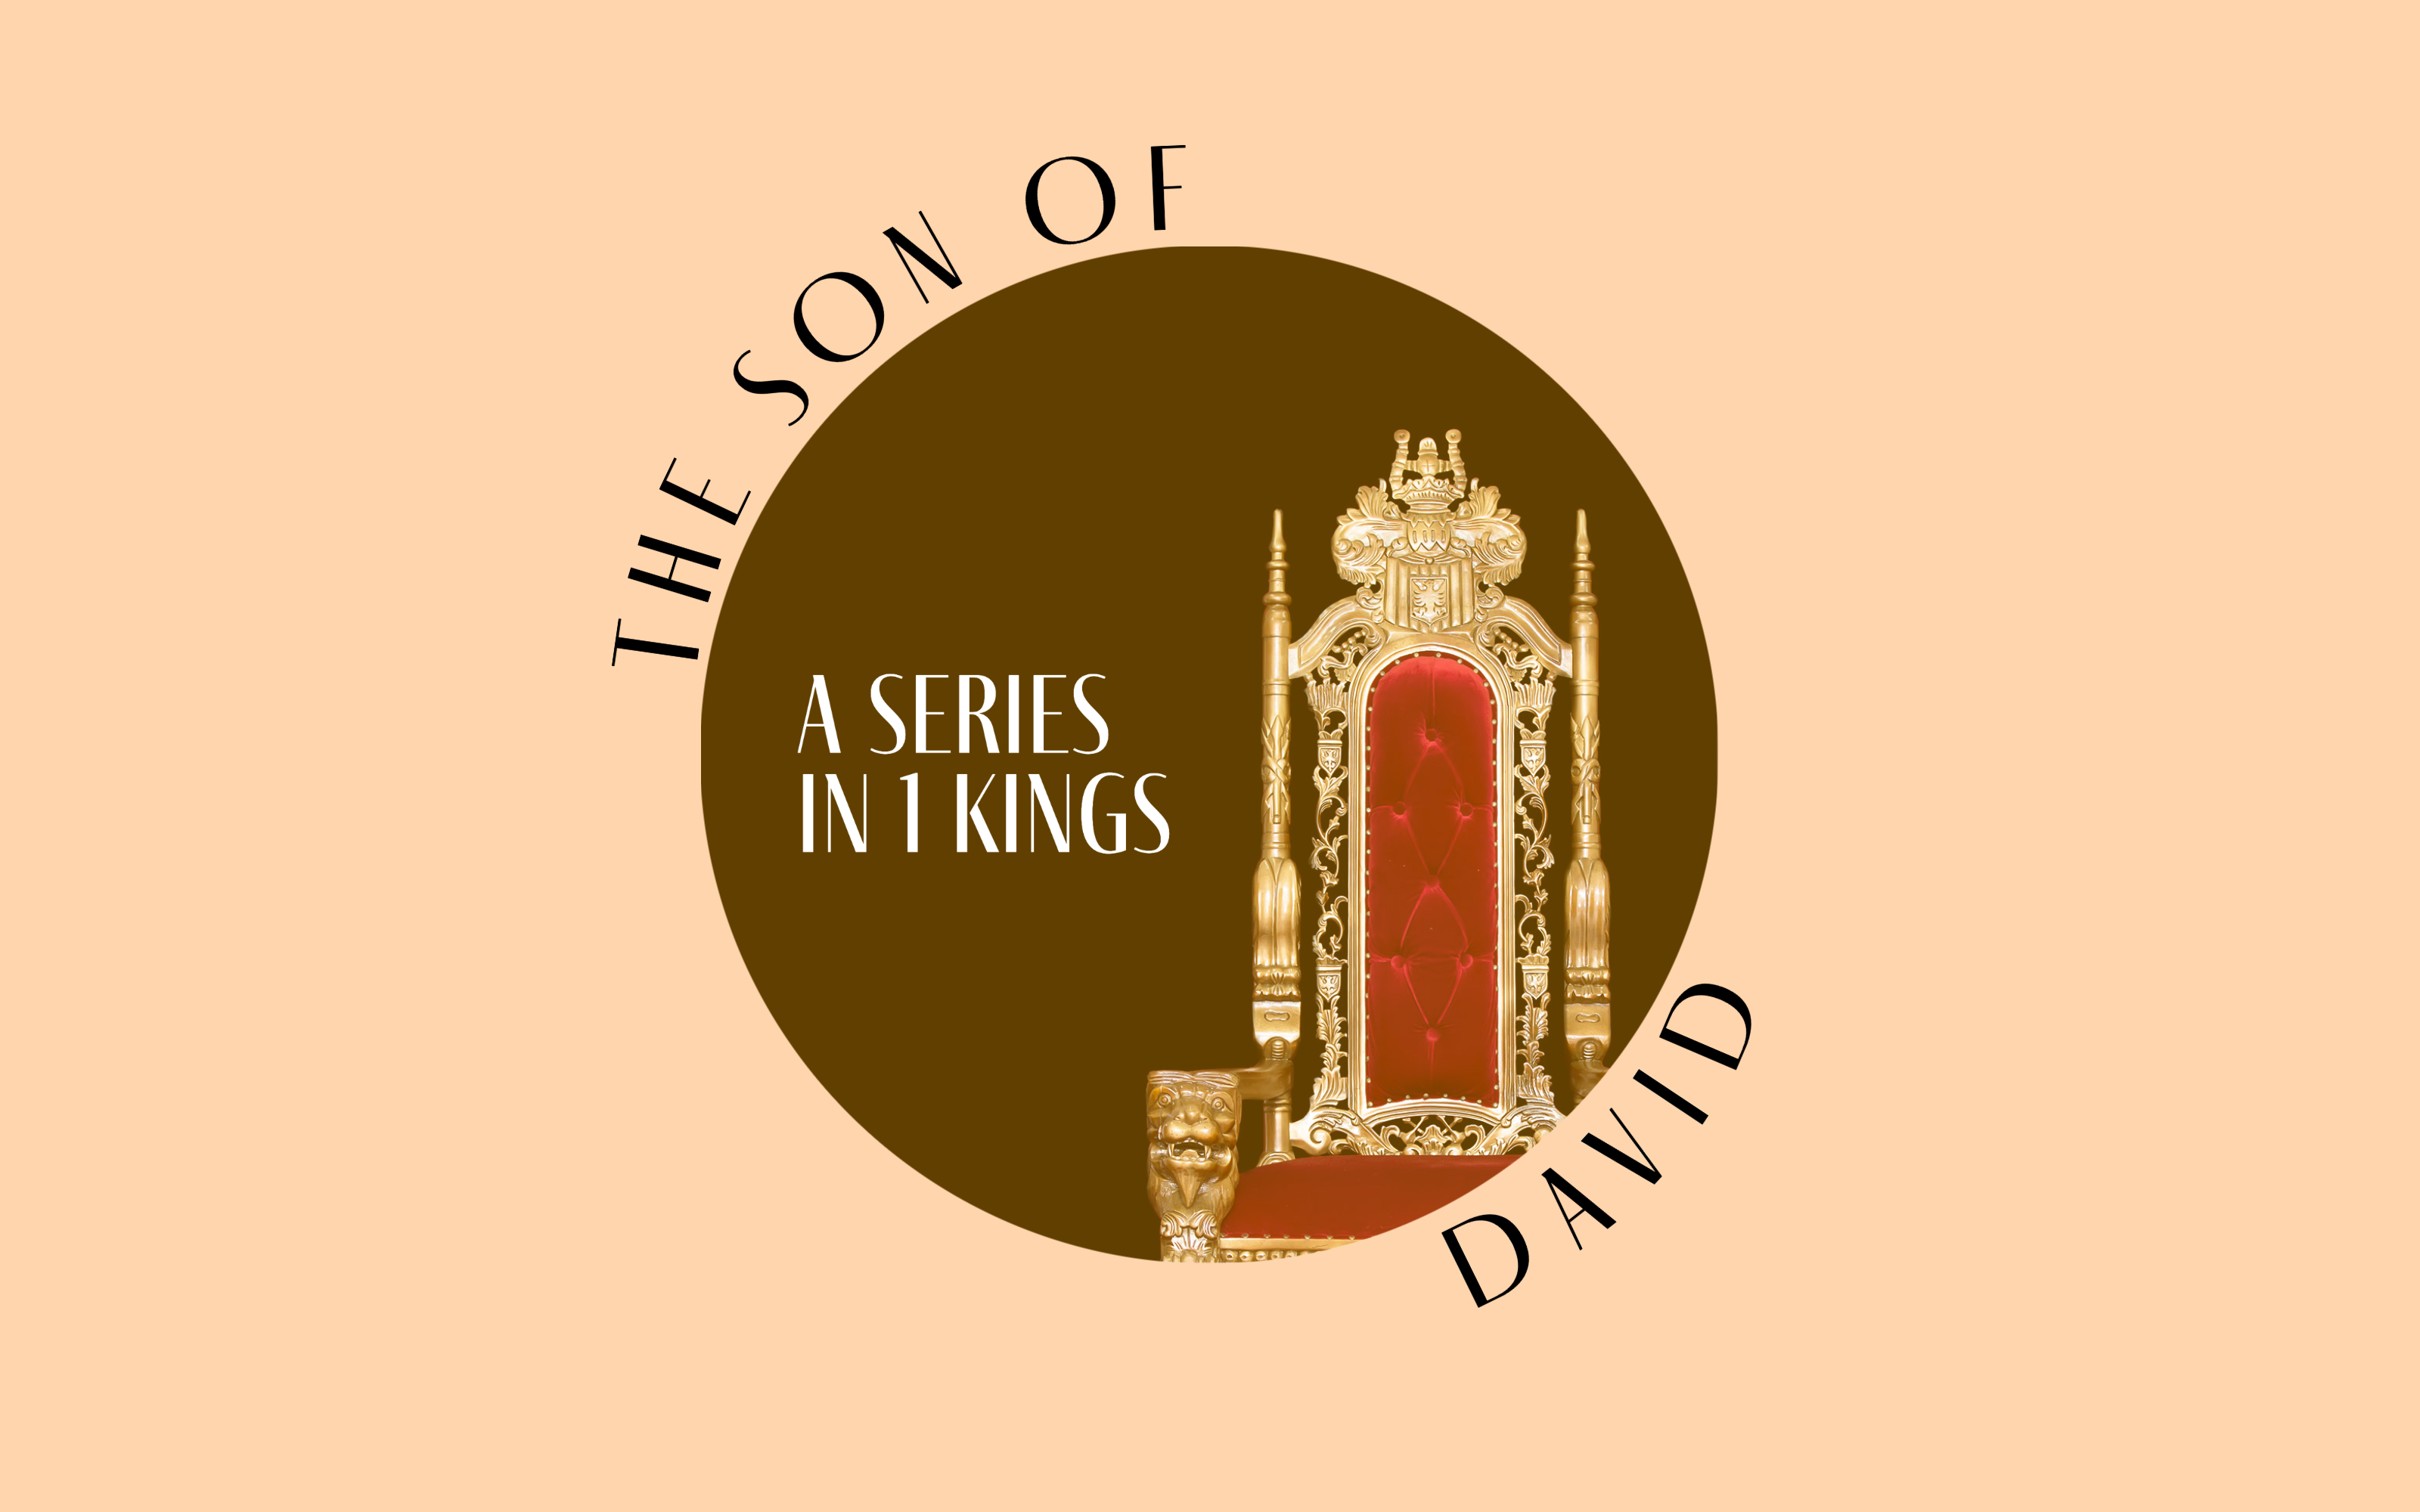 The Son of David Studies (1 Kings 1-11 Community Group Studies)